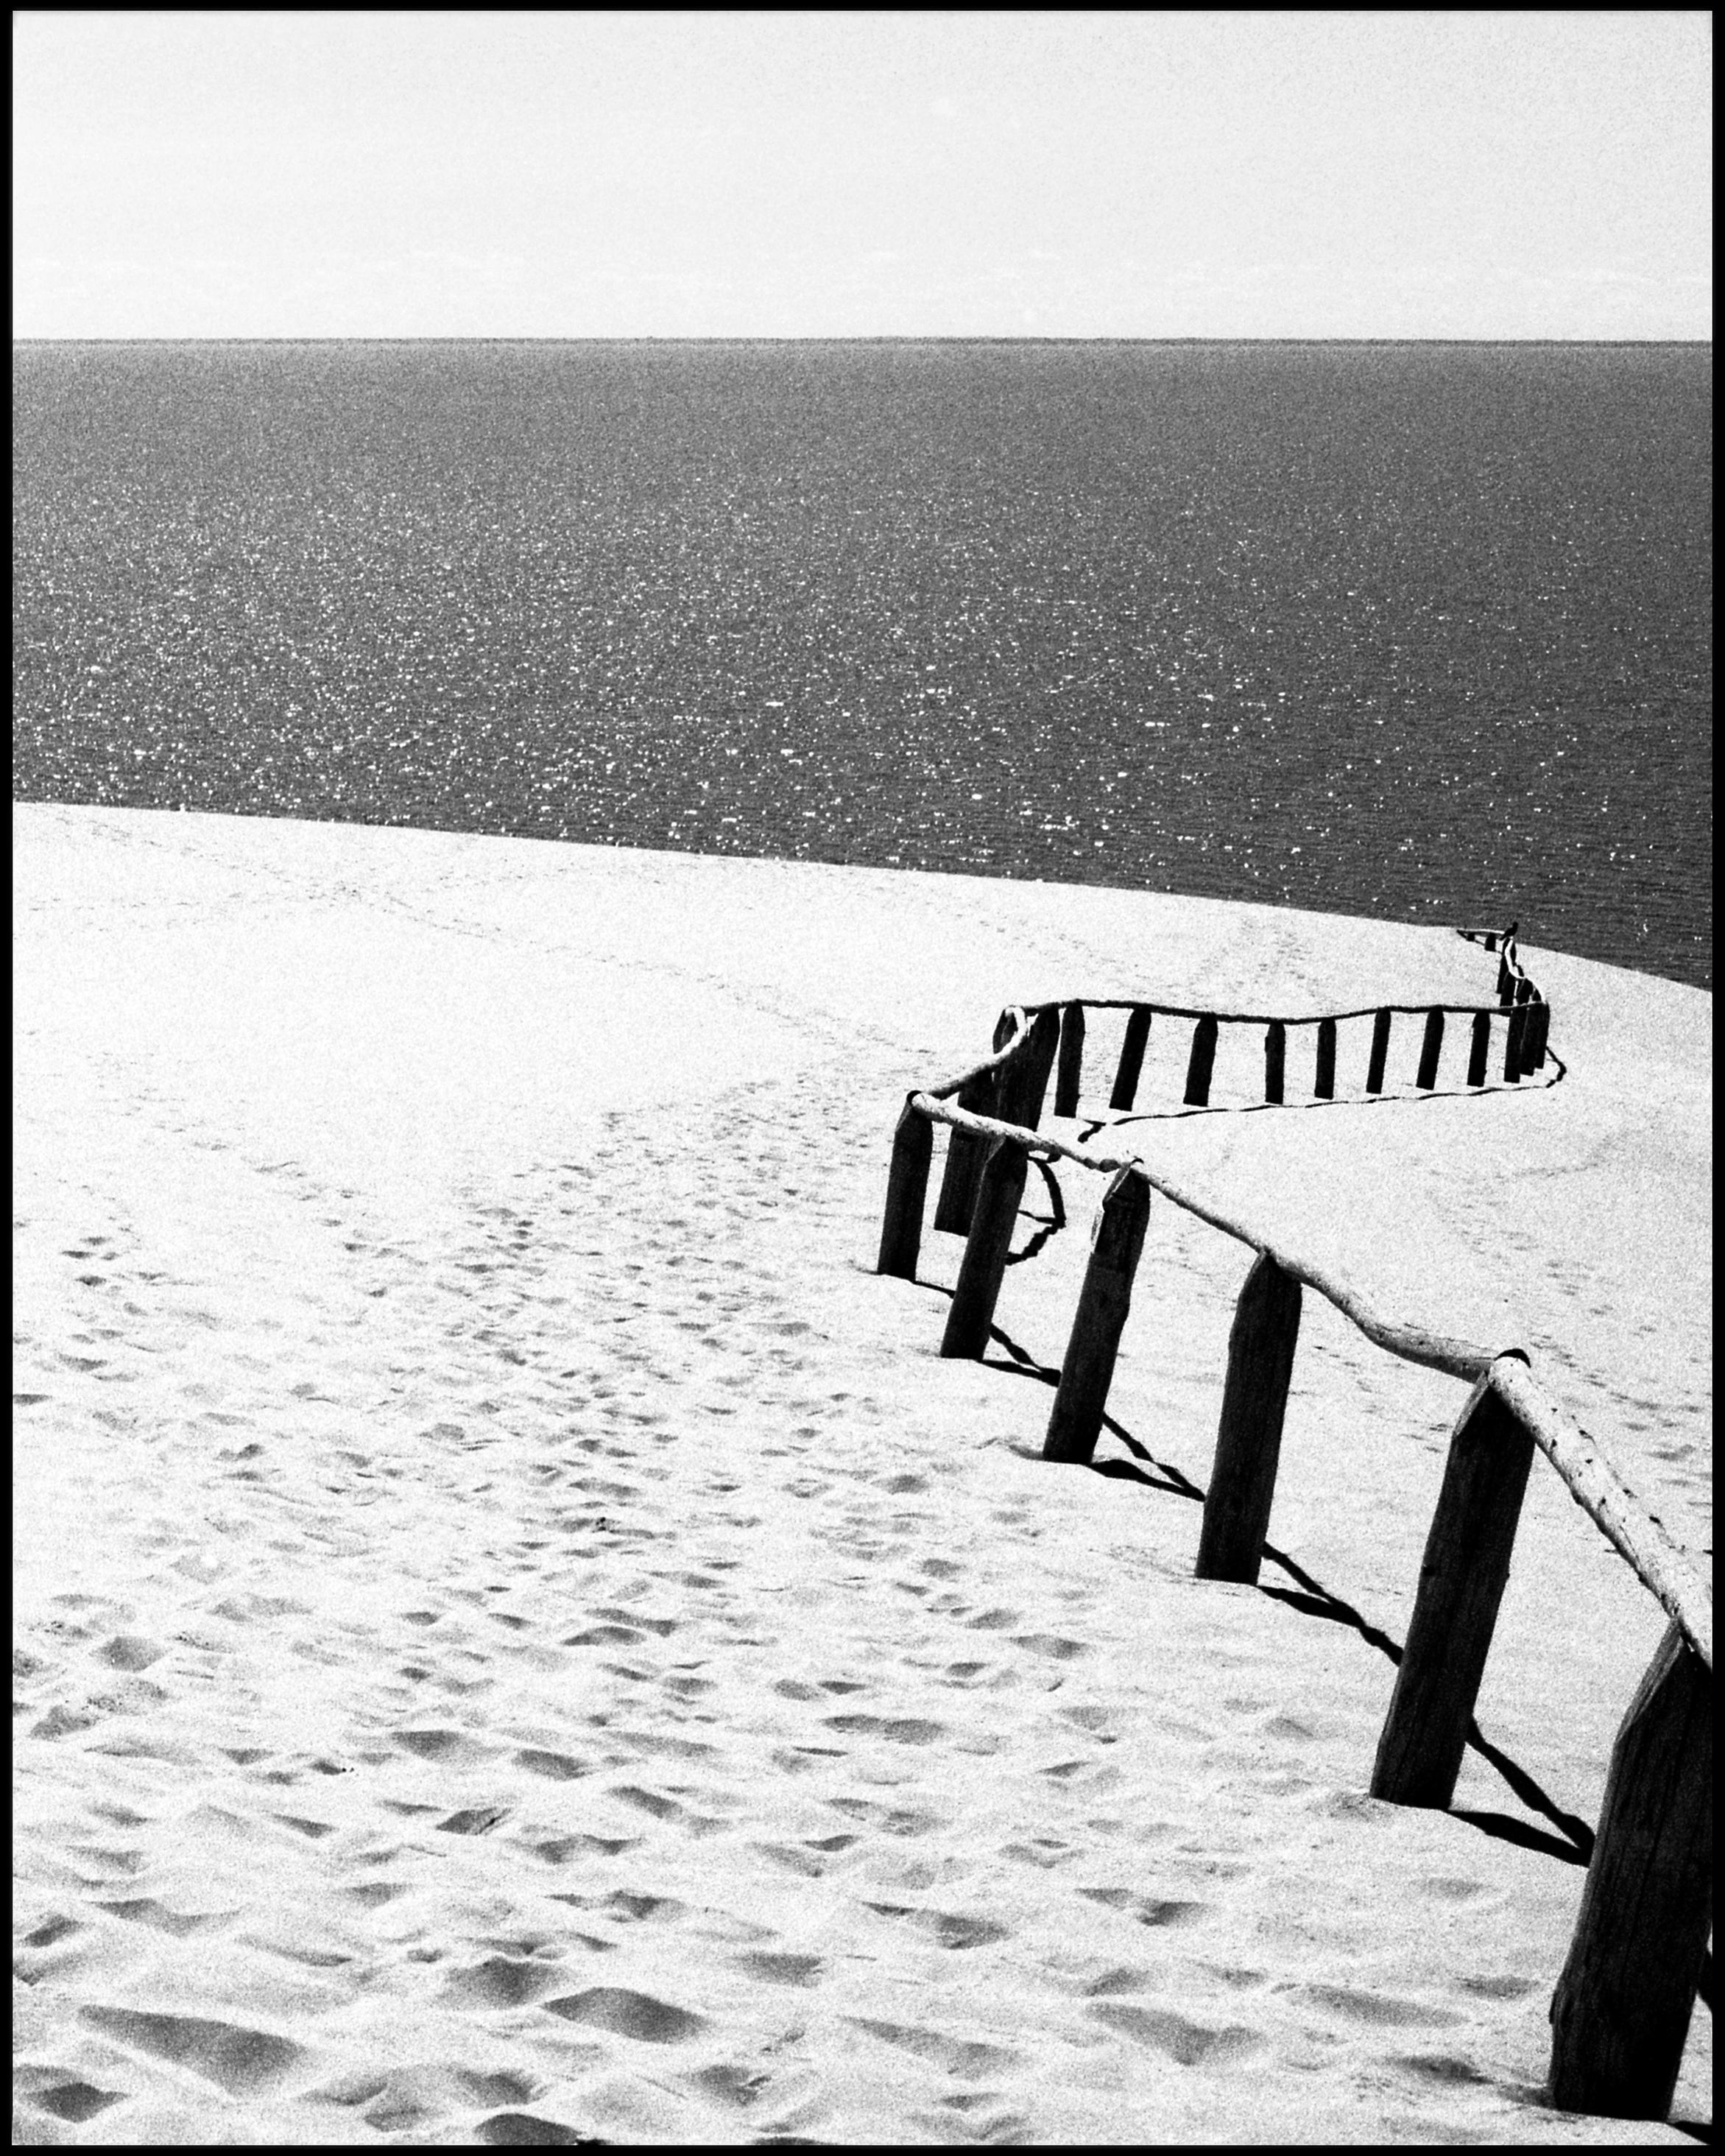 Ugne Pouwell Black and White Photograph – Nida – Schwarz-Weiß- Analogue-Fotografie von Sandünen und Baltischem Meer